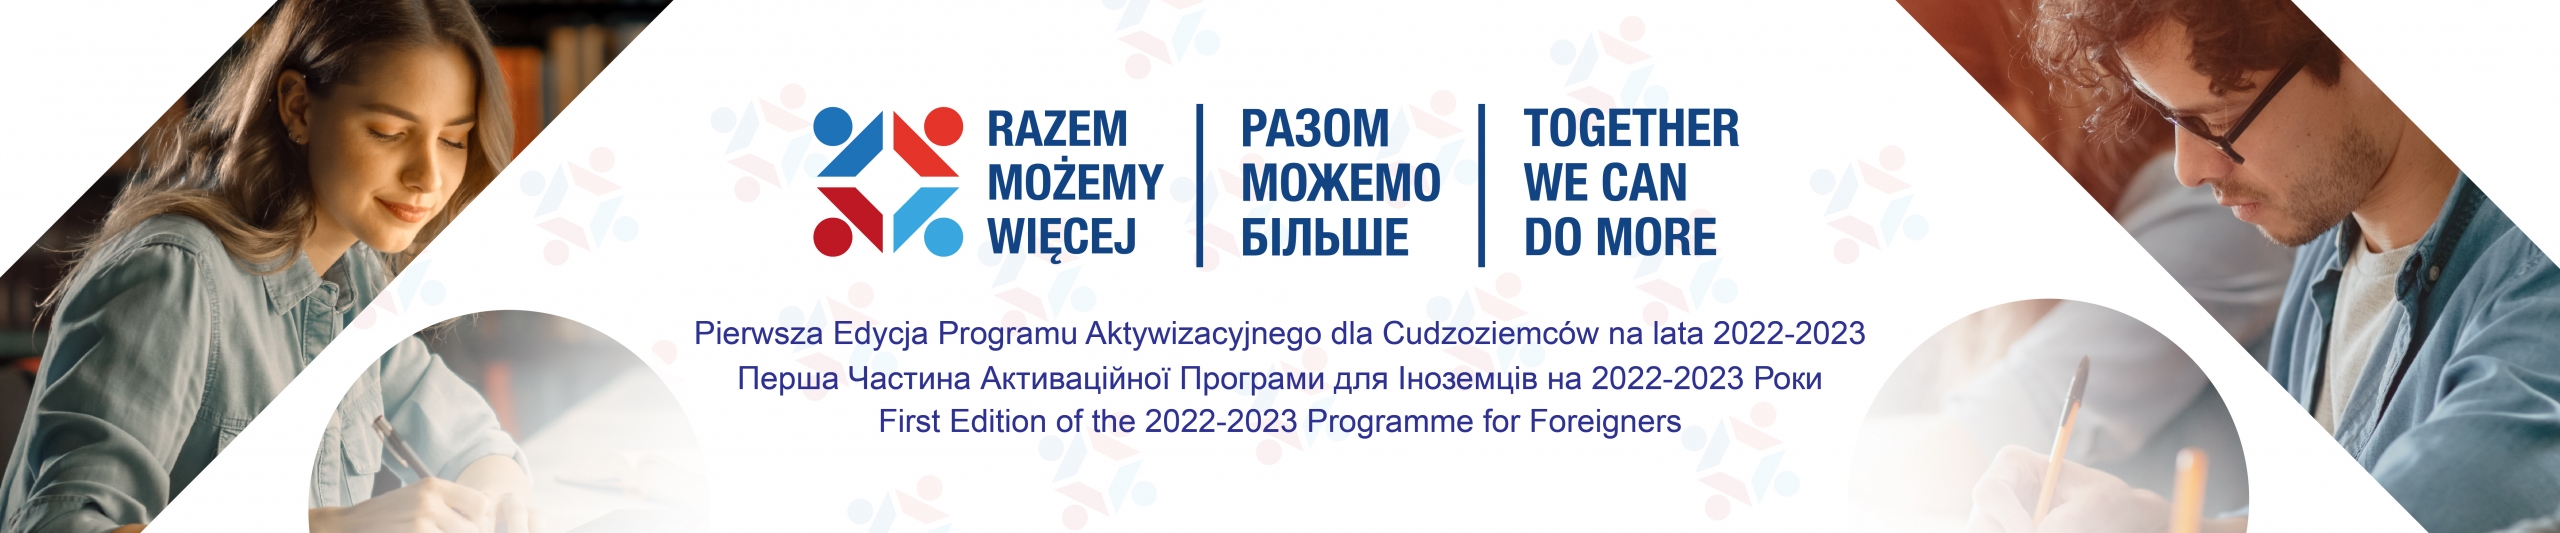 Razem Możemy Więcej - Program Aktywizacyjny dla Cudzoziemców na lata 2022-2023